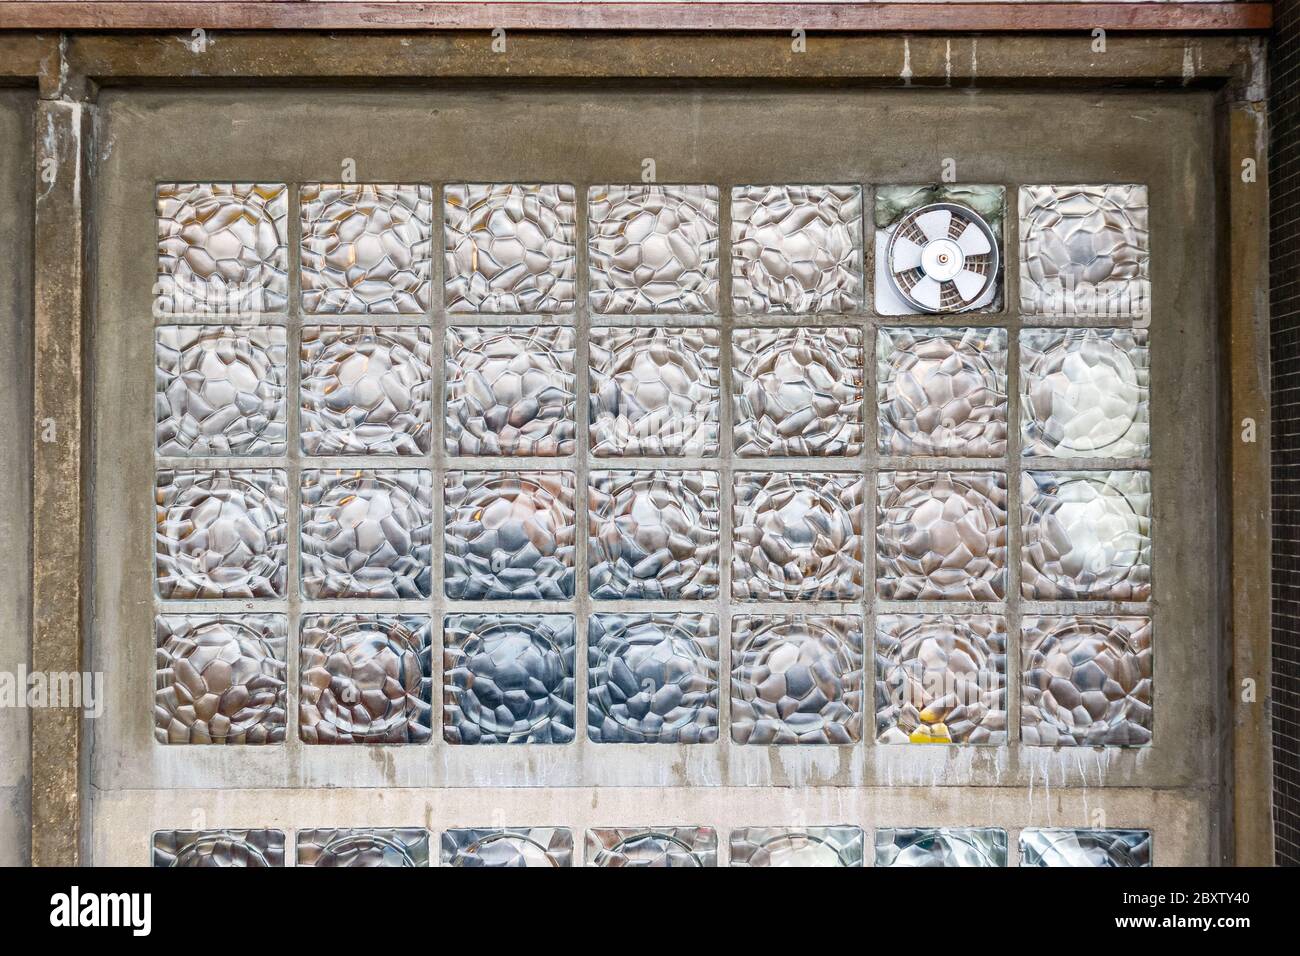 Ventola di aspirazione per ventilazione installata su una parete di blocco in vetro per l'uso in background Foto Stock